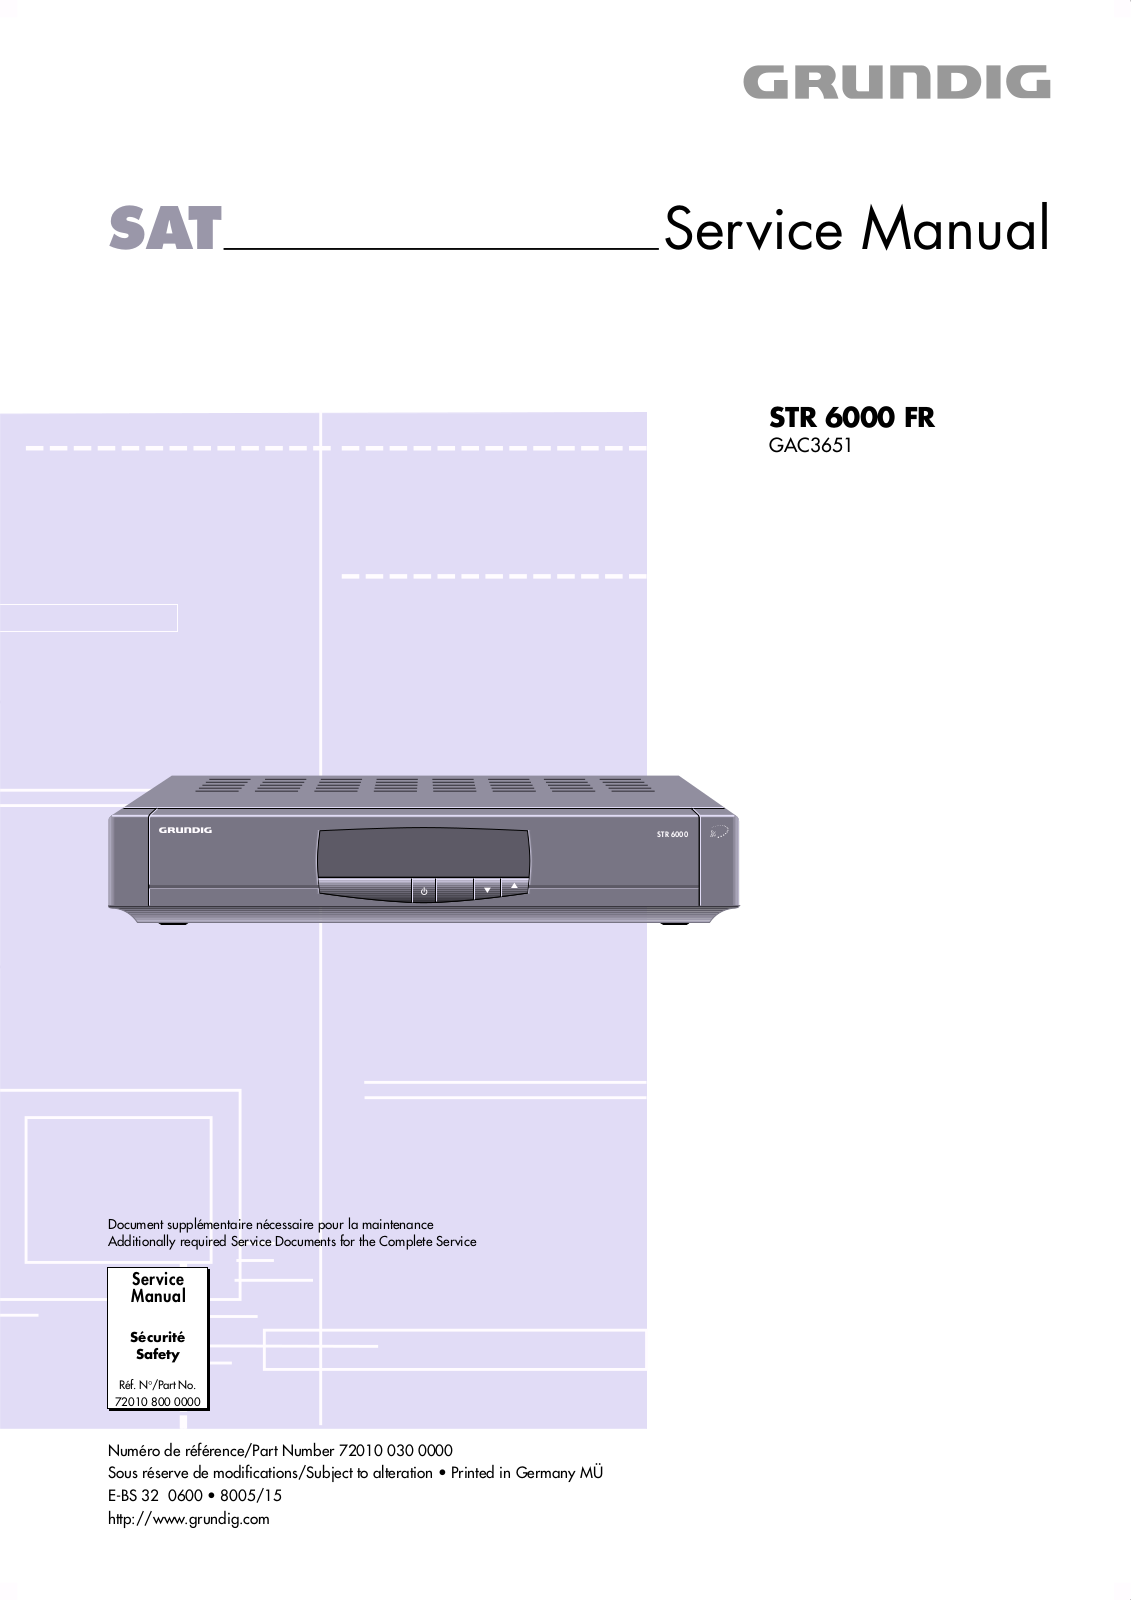 Grundig STR 6000 FR Service Manual